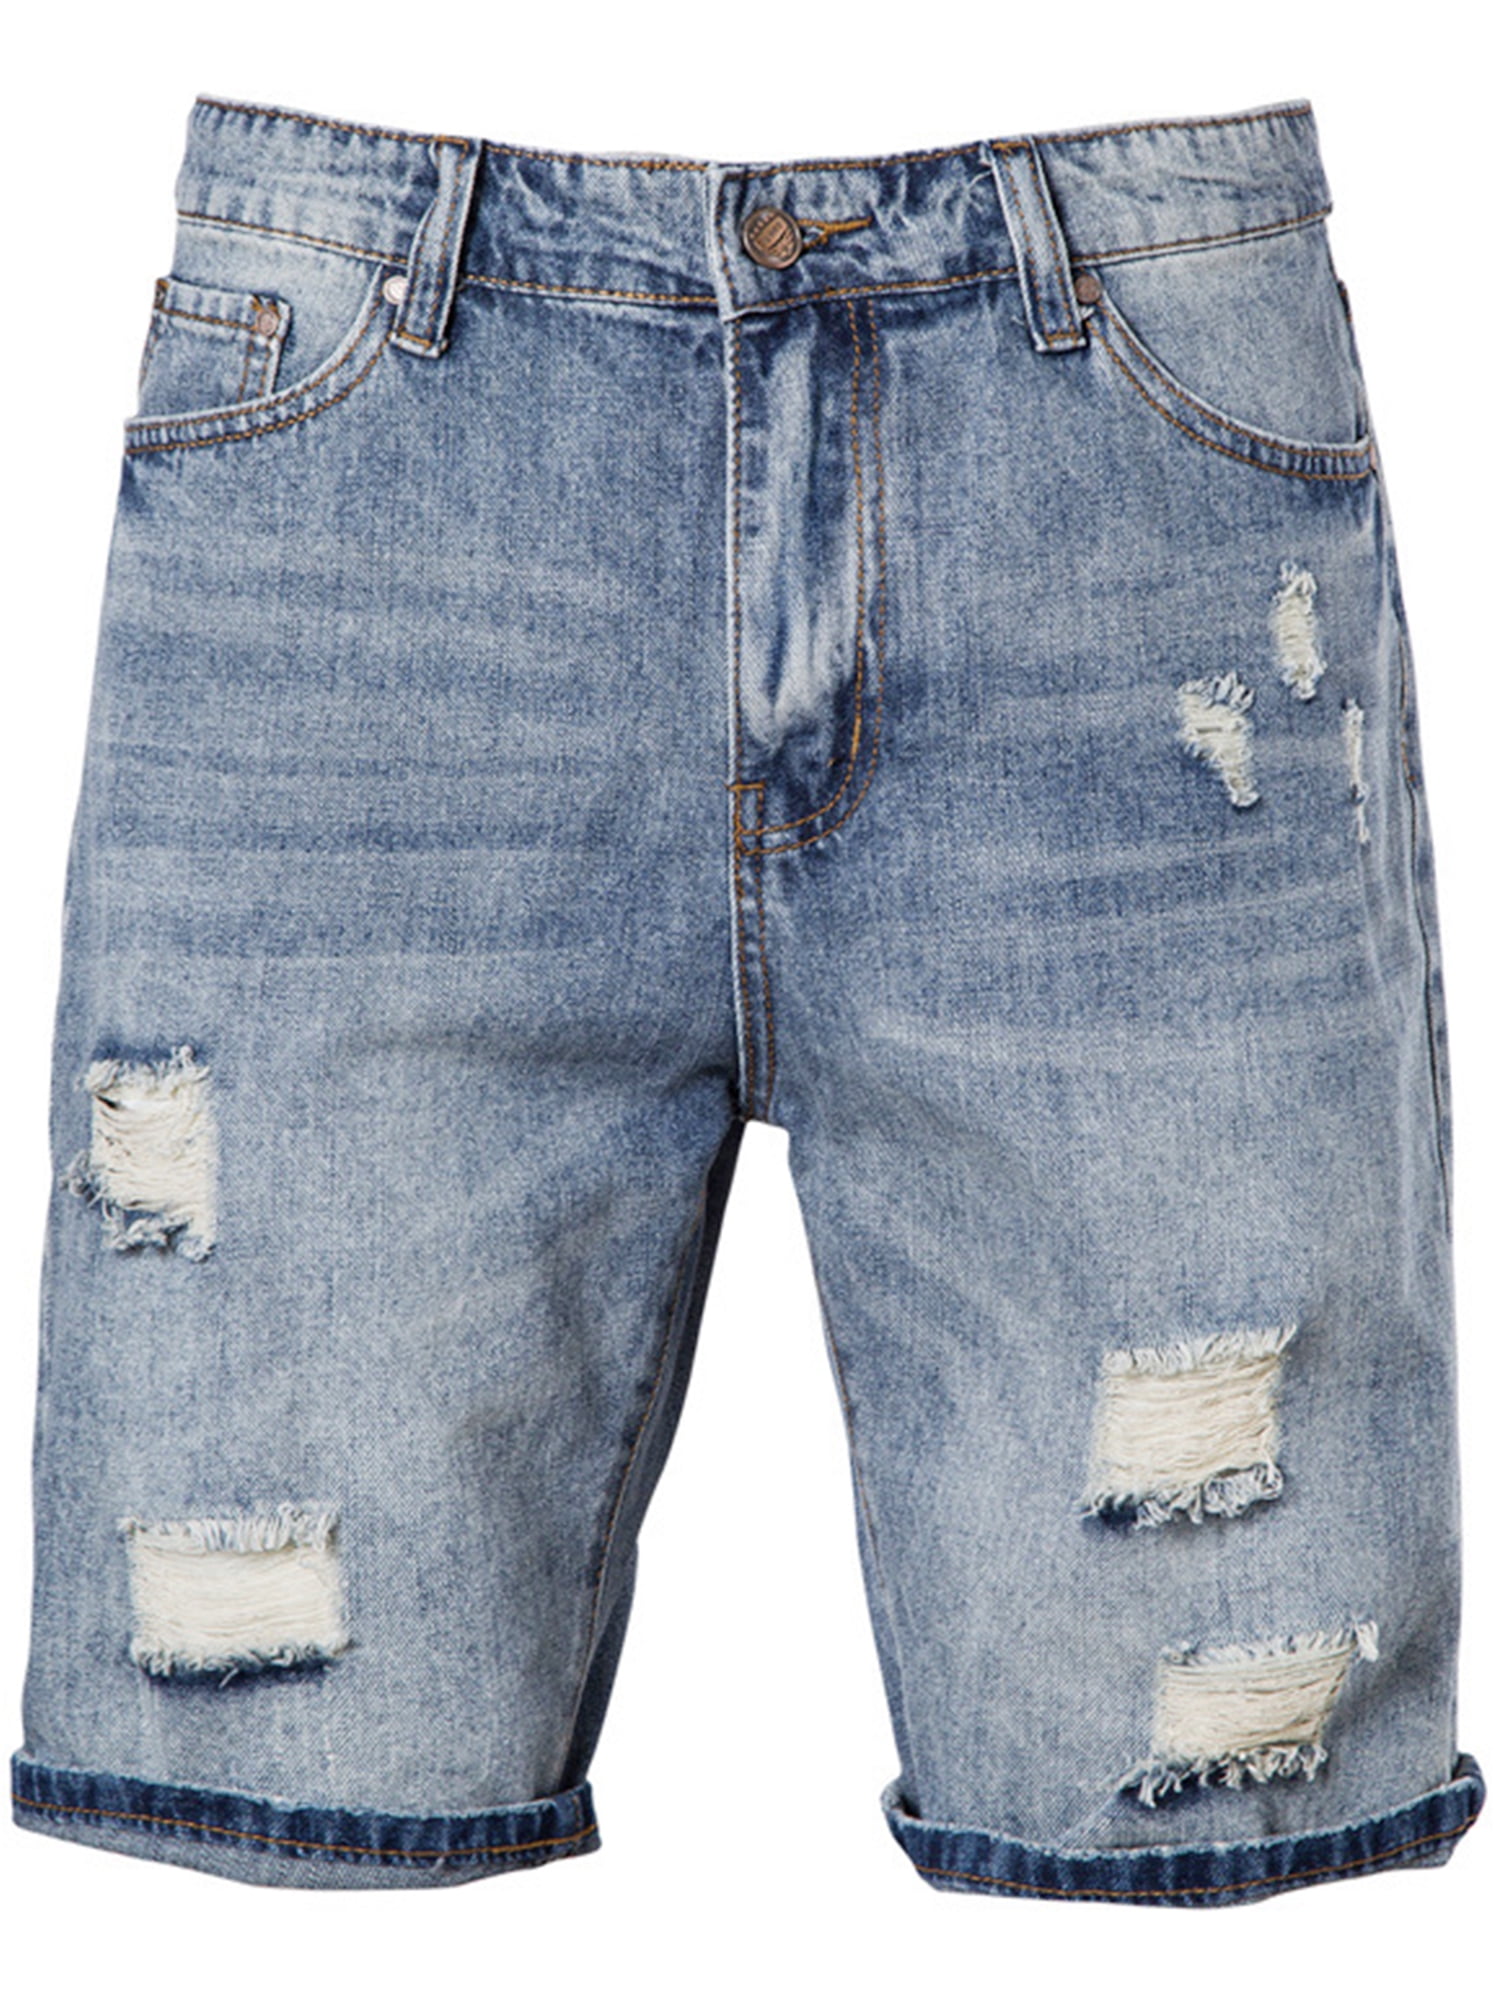 Frontwalk Mens Loose Distressed Jeans Pocket Frayed Denim Shorts